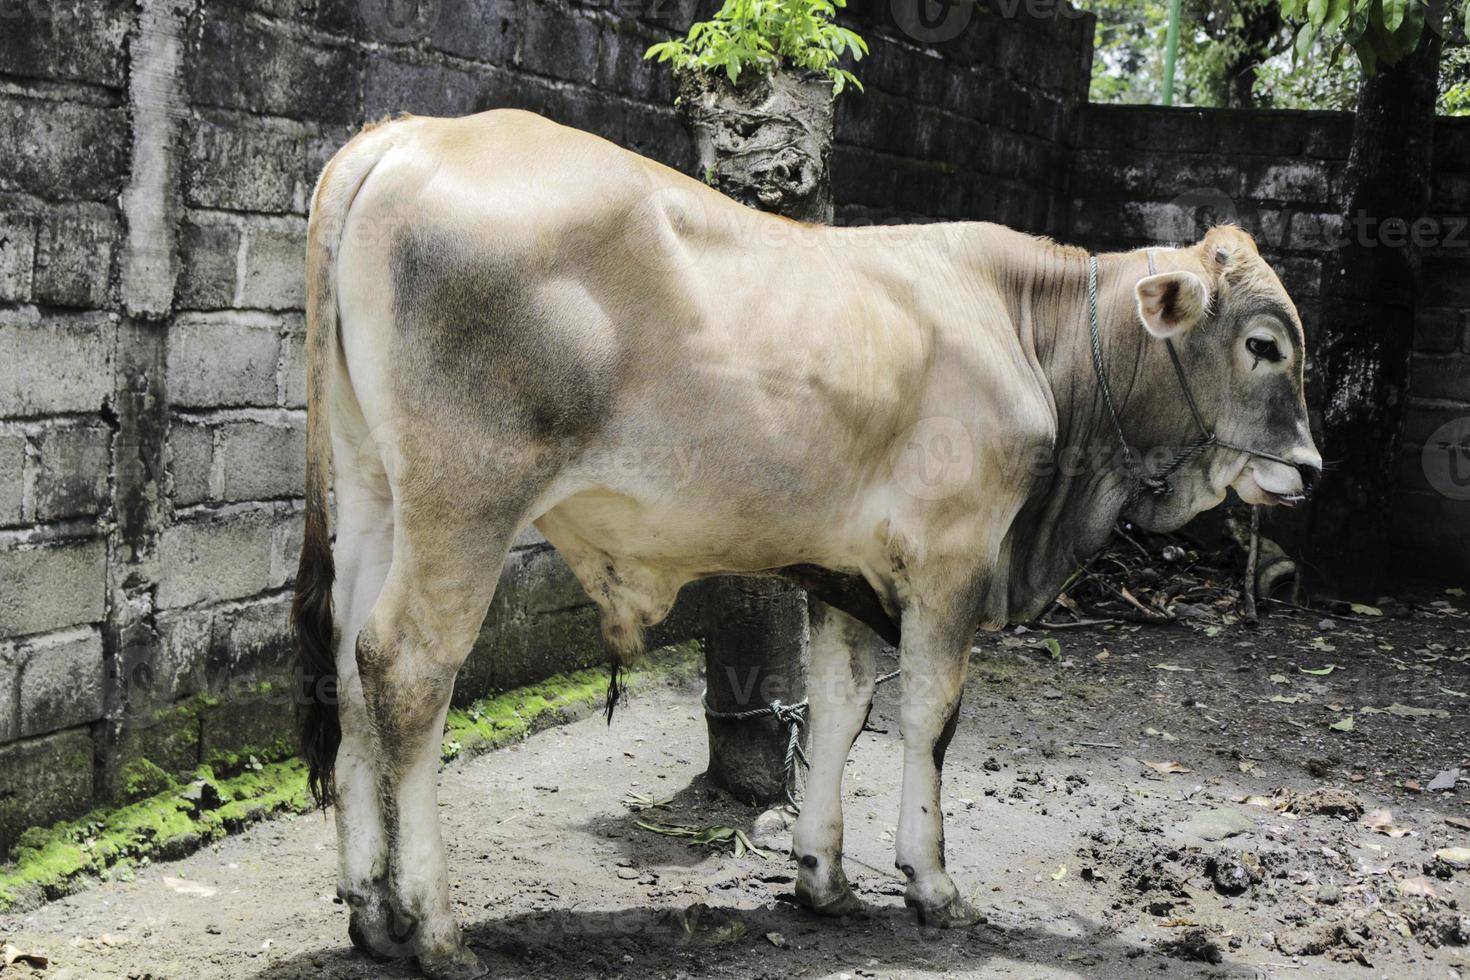 jonge ongole gekruiste runderen of javaanse koe of bos taurus is het grootste vee in indonesië in traditionele boerderij, indonesië. traditionele veeteelt. foto